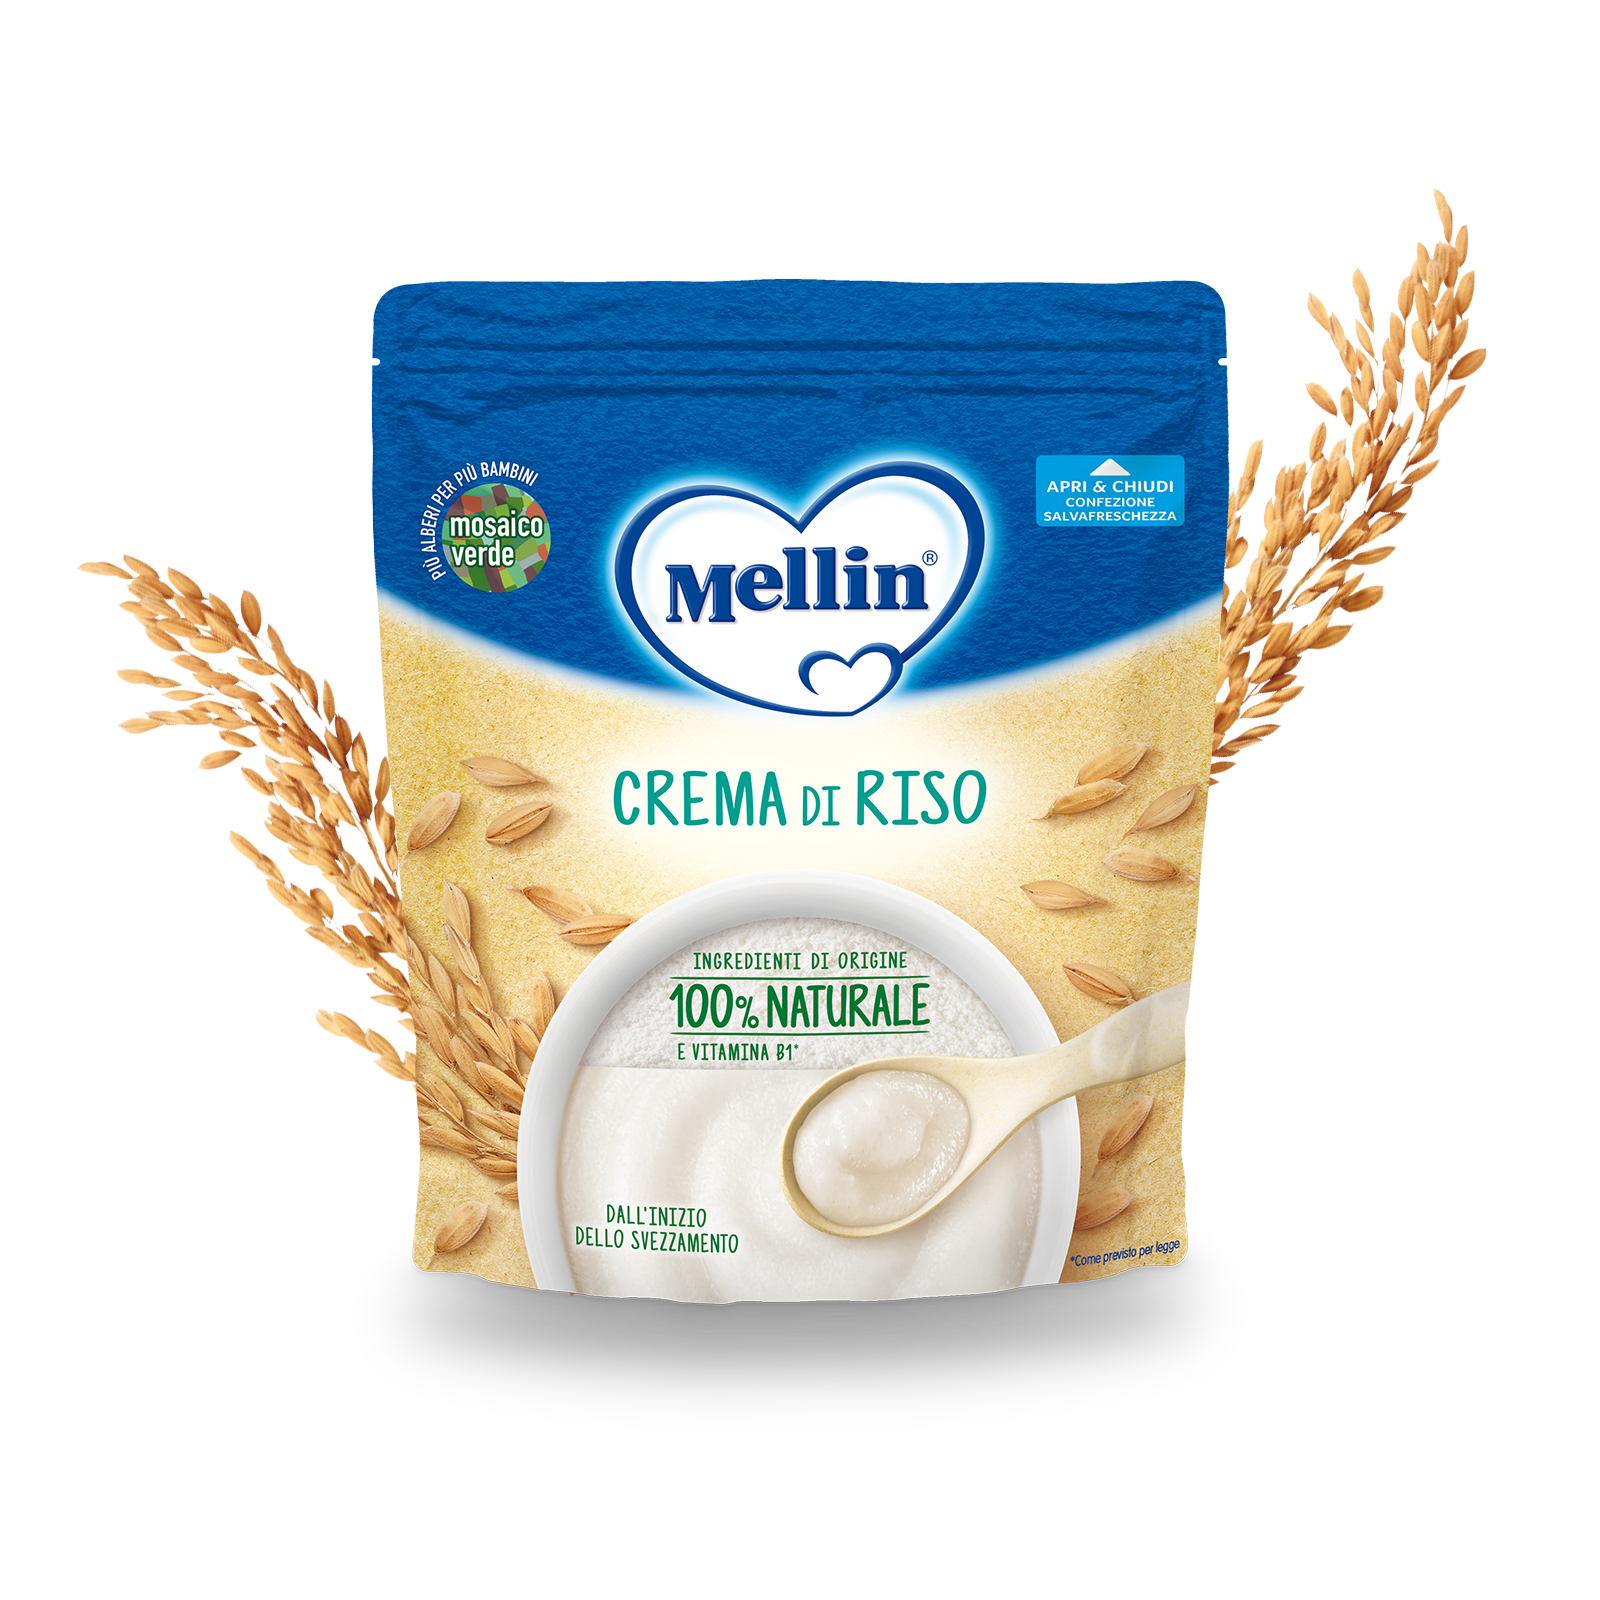 Crema di riso 200 g Confezione da 200 g | Mellin